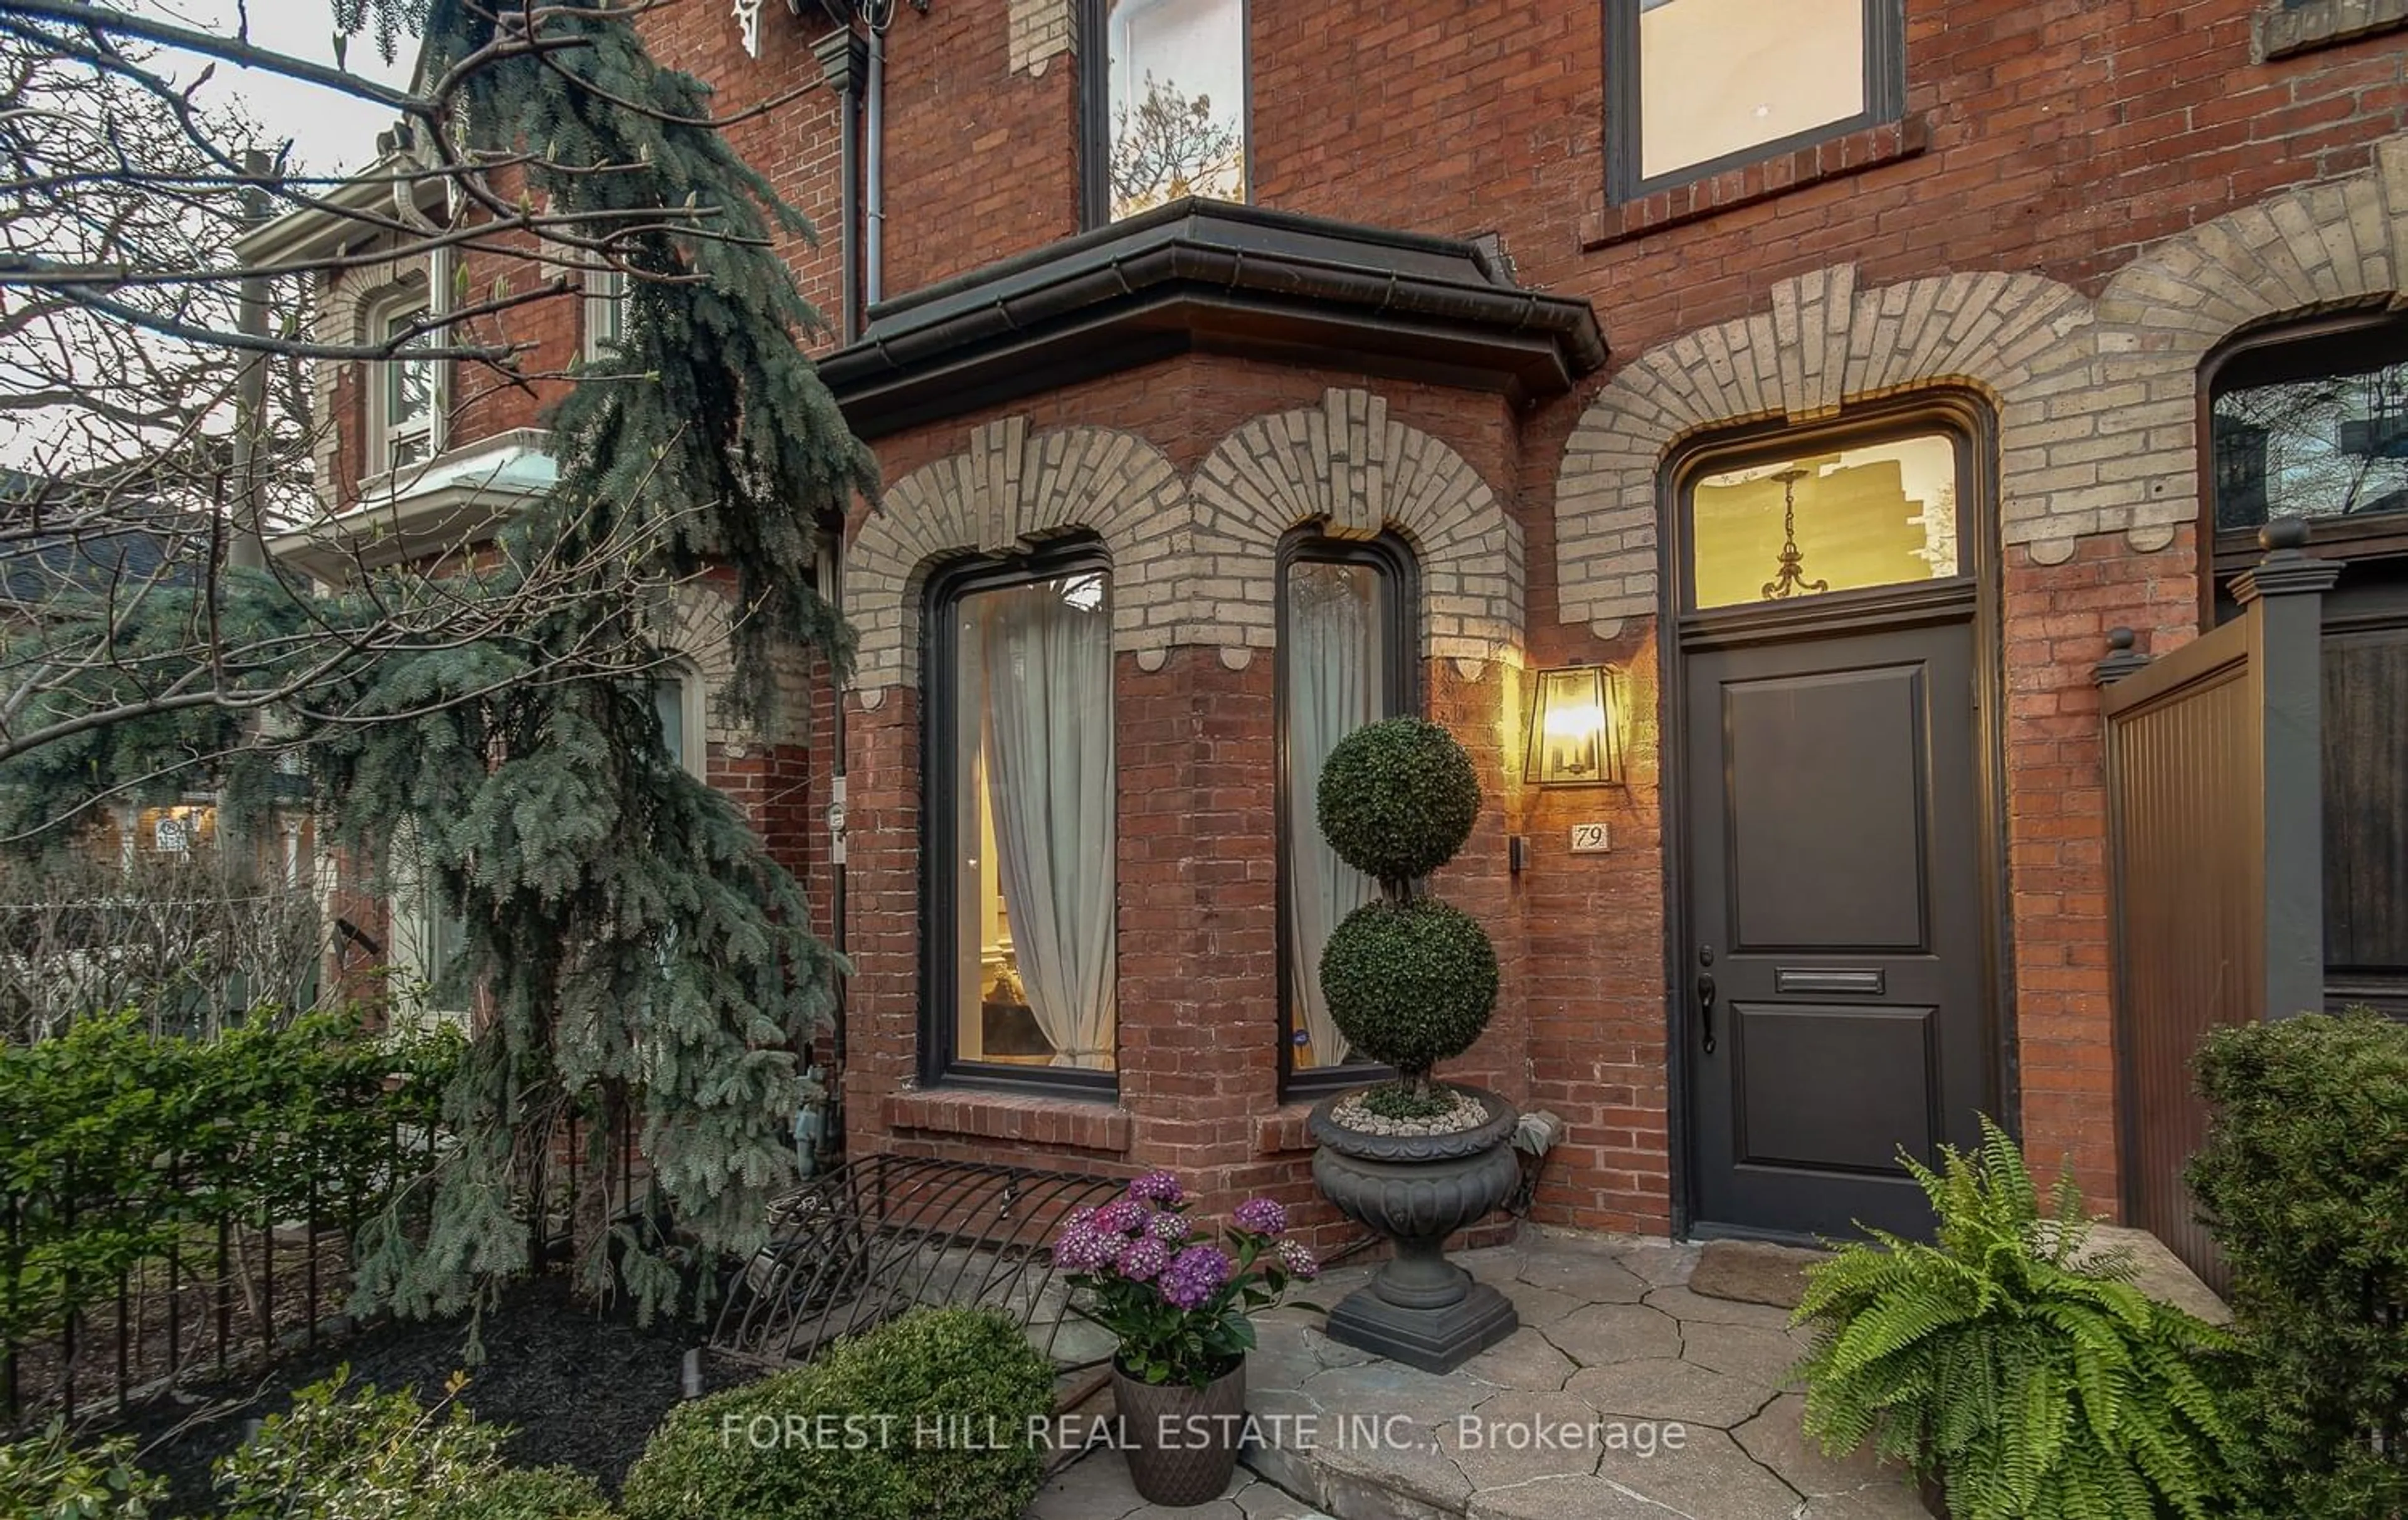 Home with brick exterior material for 79 Hazelton Ave, Toronto Ontario M5R 2E3